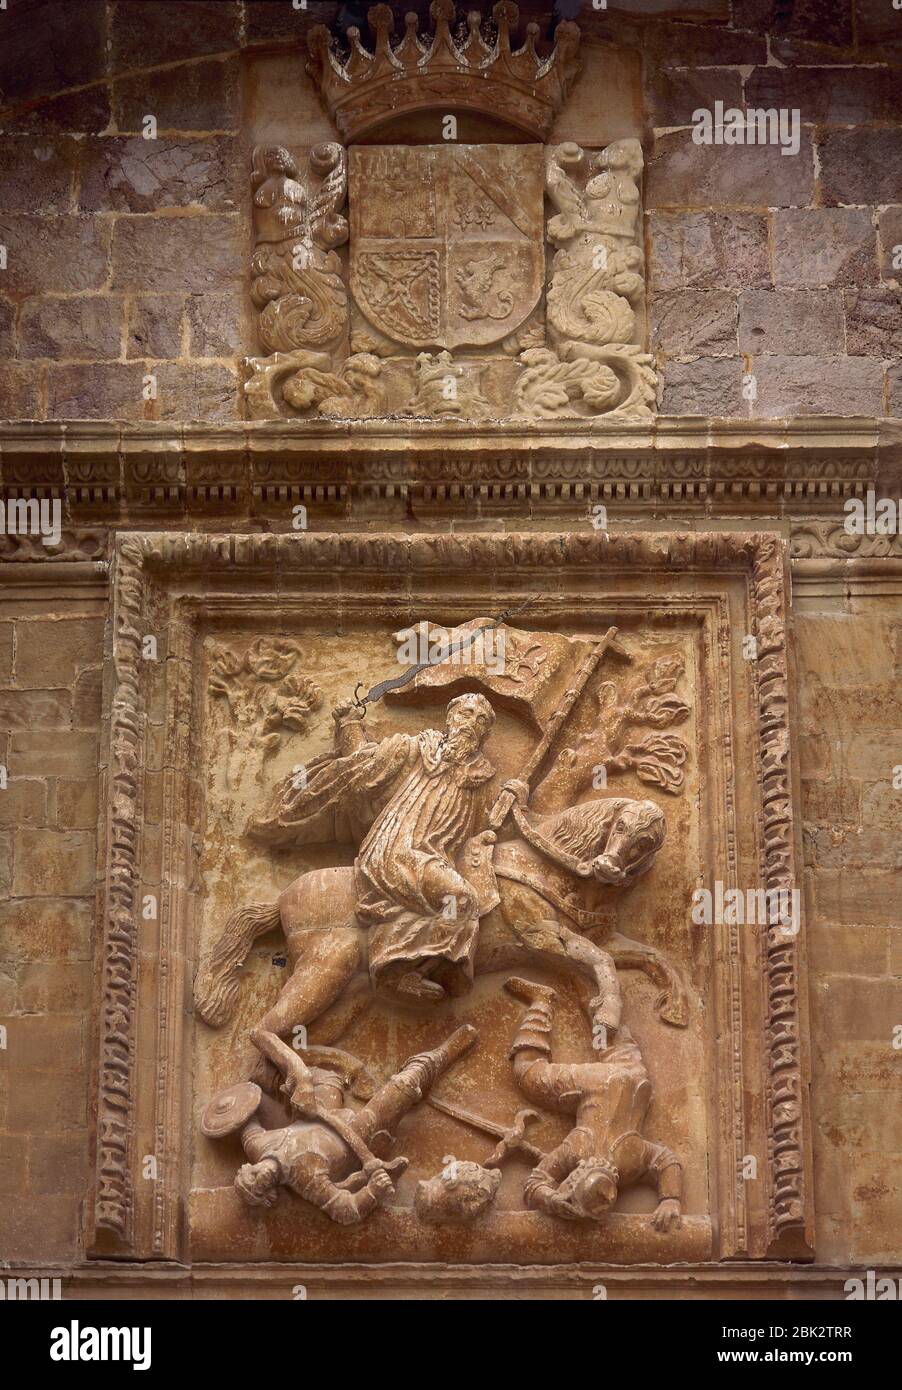 Spain, La Rioja, San Millan de la Cogolla. Yuso Monastery. Relief of Saint Emilian the Moor-Slayer by Spanish sculptor Diego Lizarraga, 1661-1665. Baroque portico, detail. Stock Photo